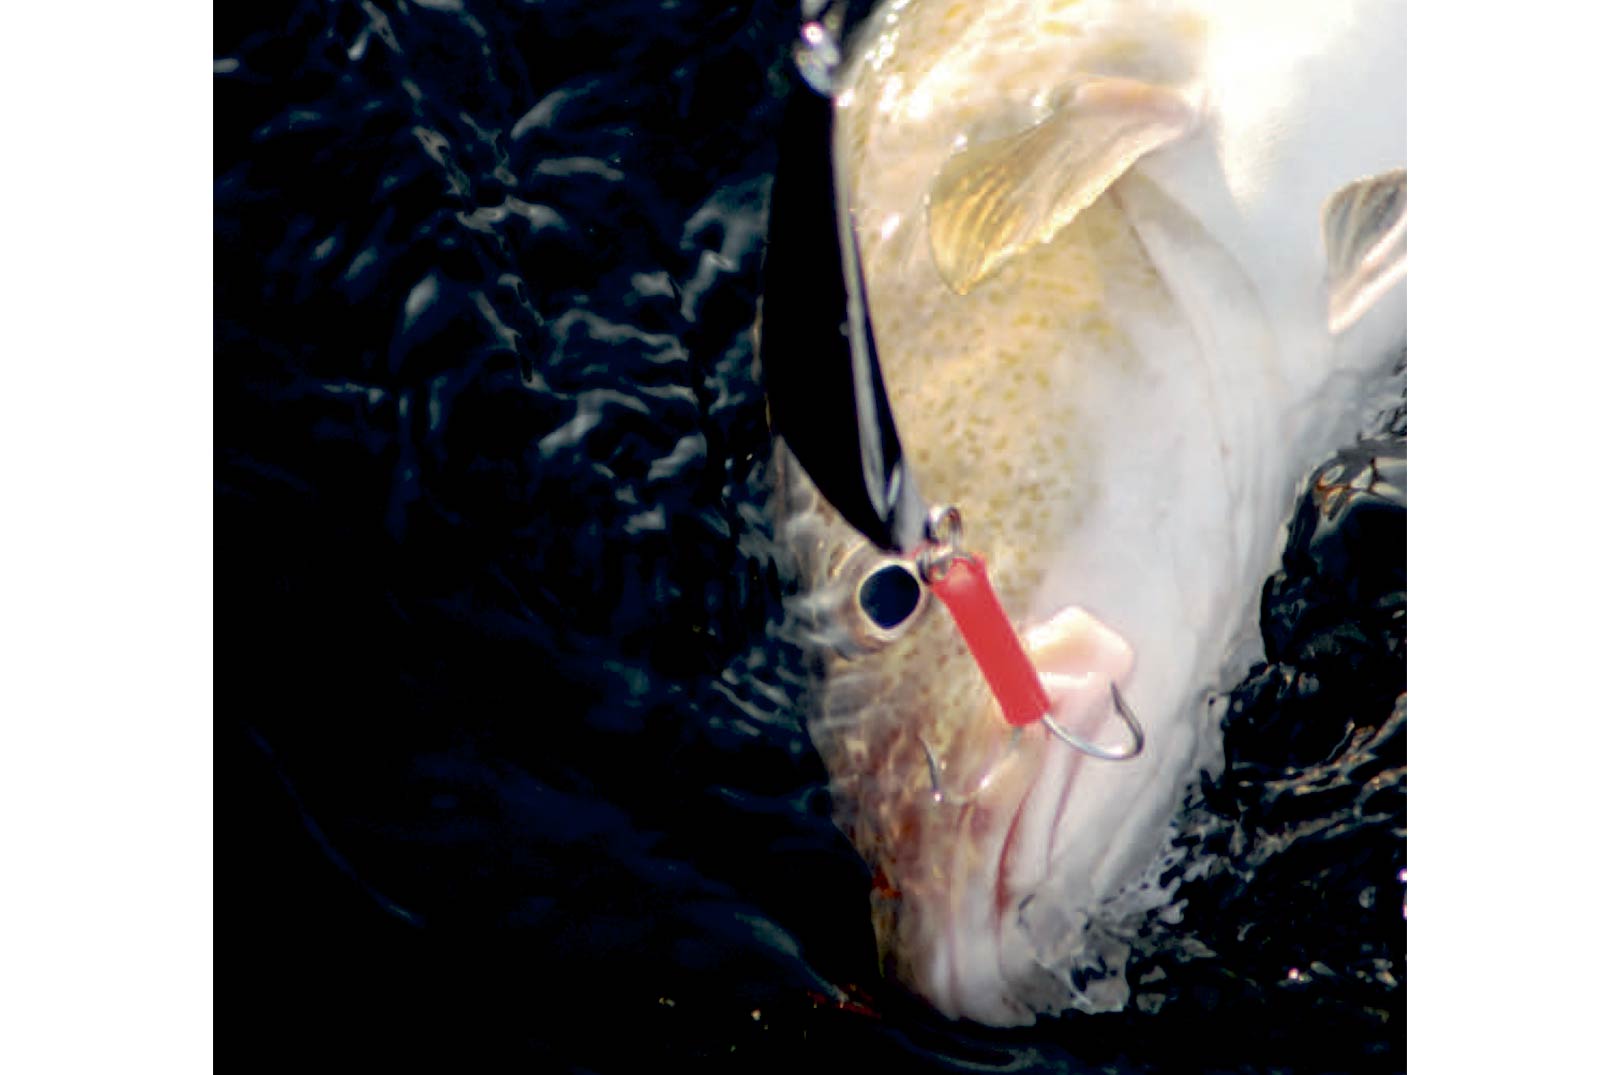 På større dybder bestårrovfiskenes føde hovedsageligt af sild, så der er god logik i at benytte blanke pirke.